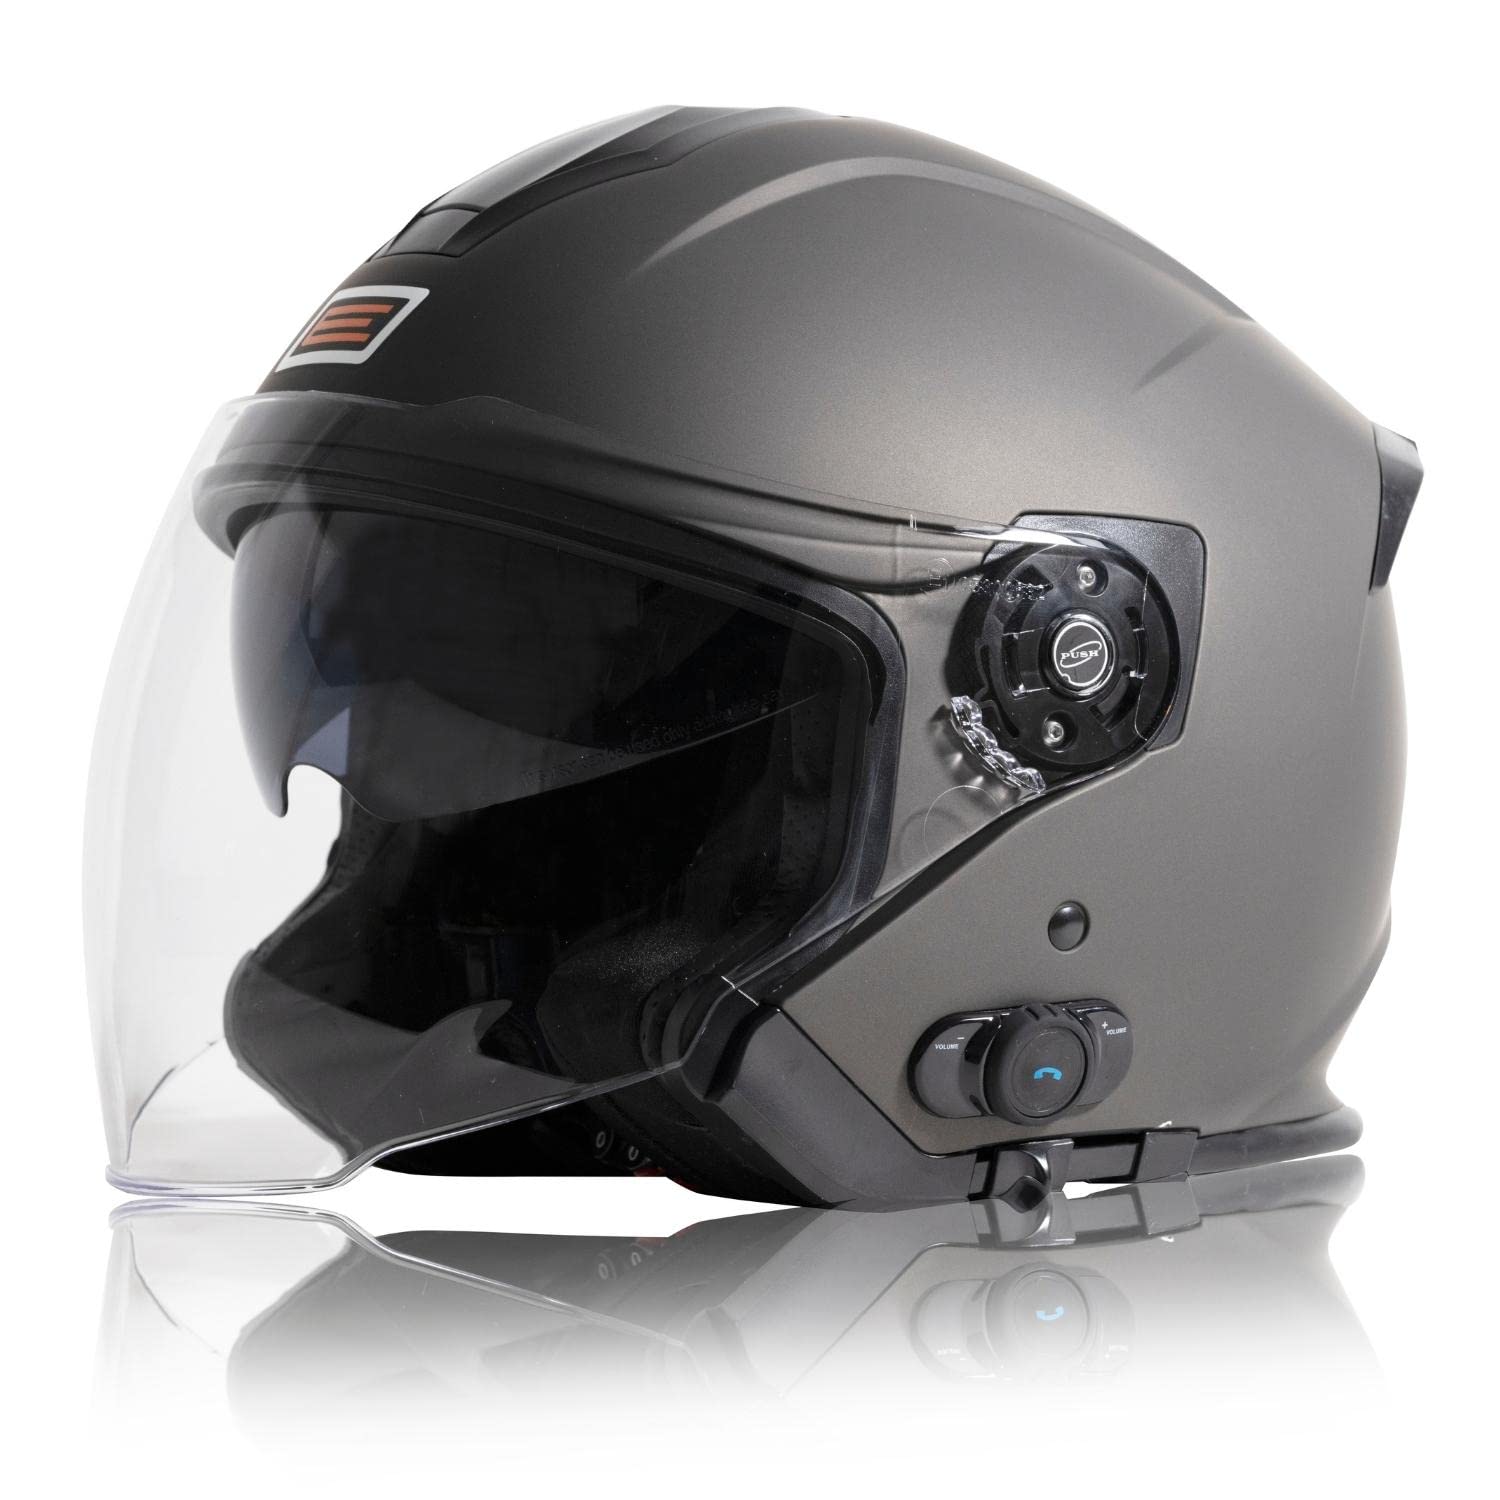 ORIGINE Motorradhelm Jethelm Roller Helm Bluetooth ECE Mit Doppel Visier